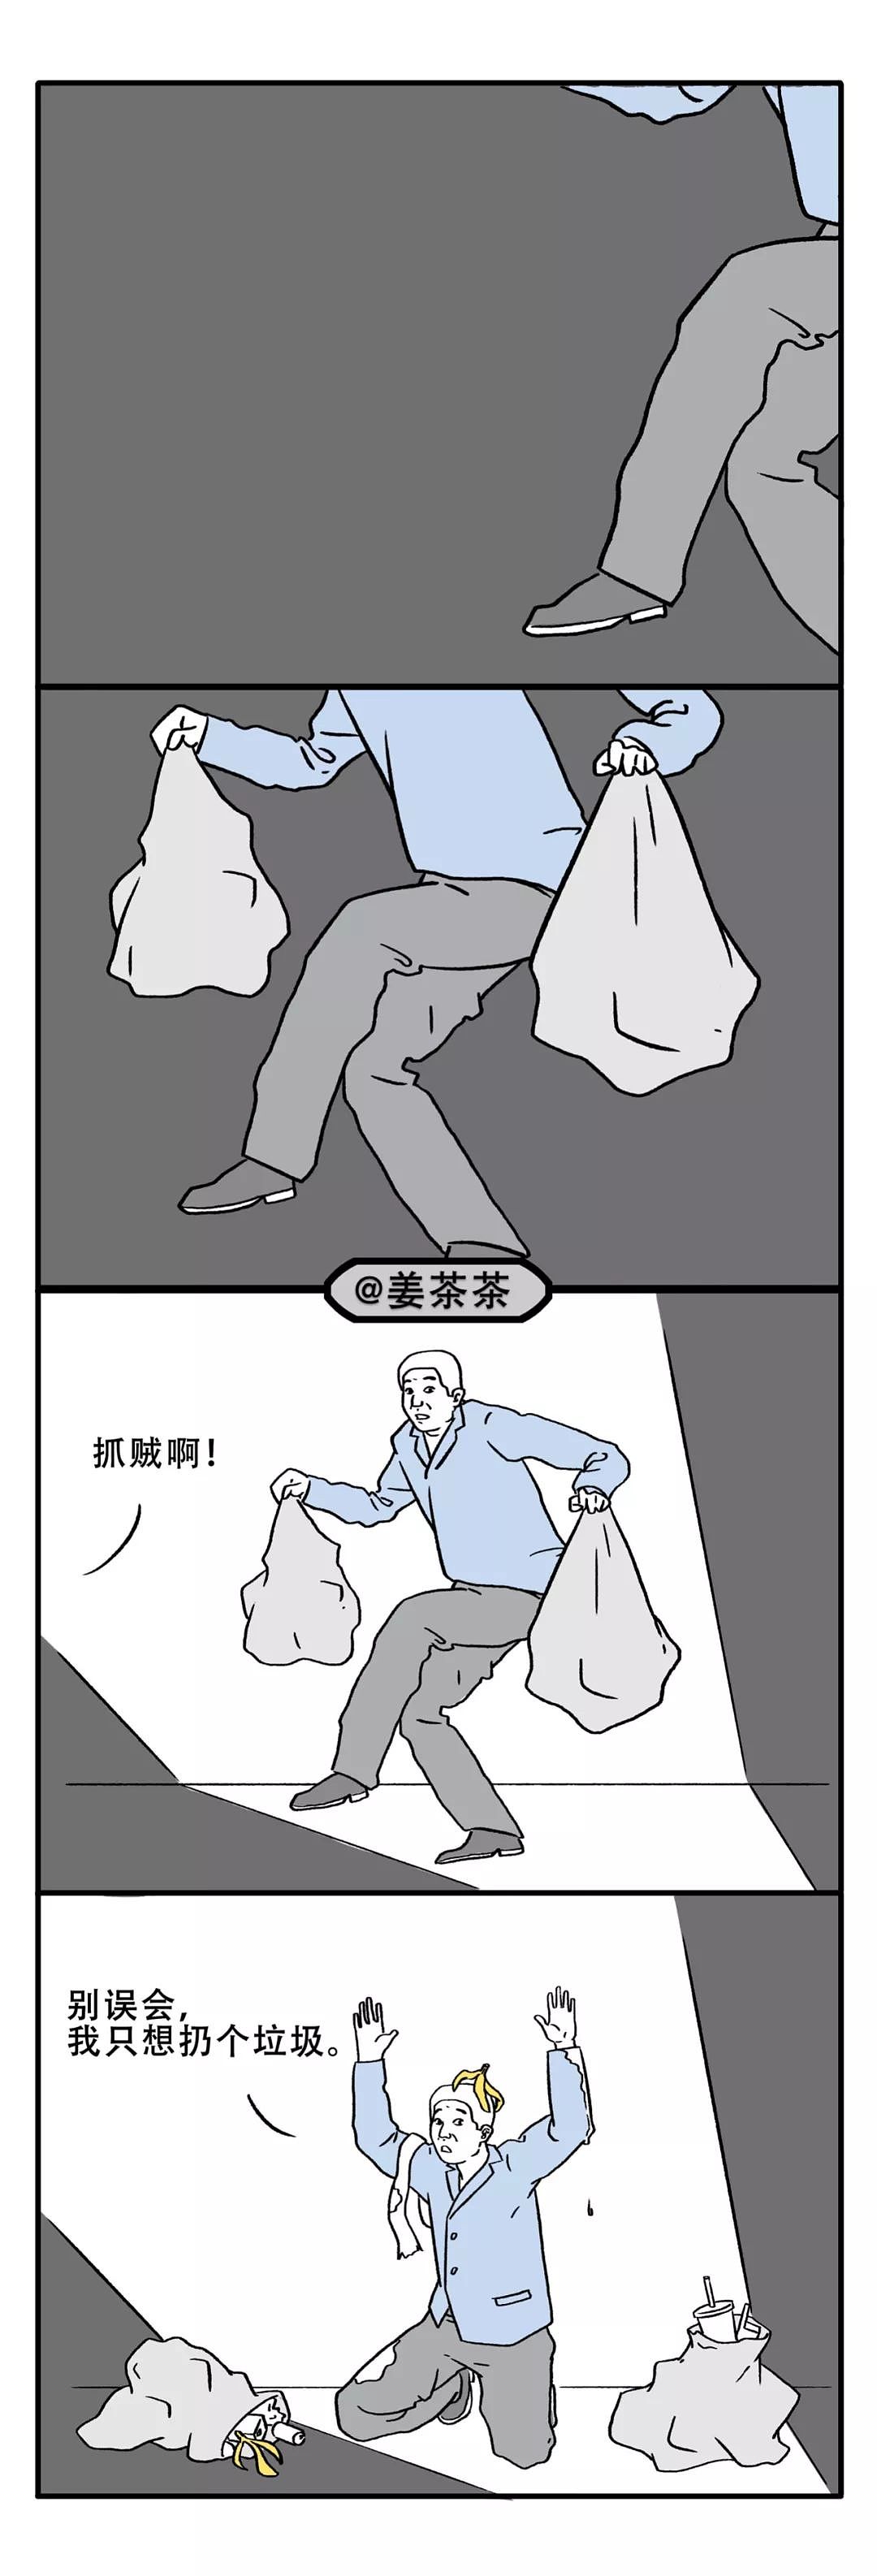 朋友圈的上海人都被垃圾分类逼疯了 - 2